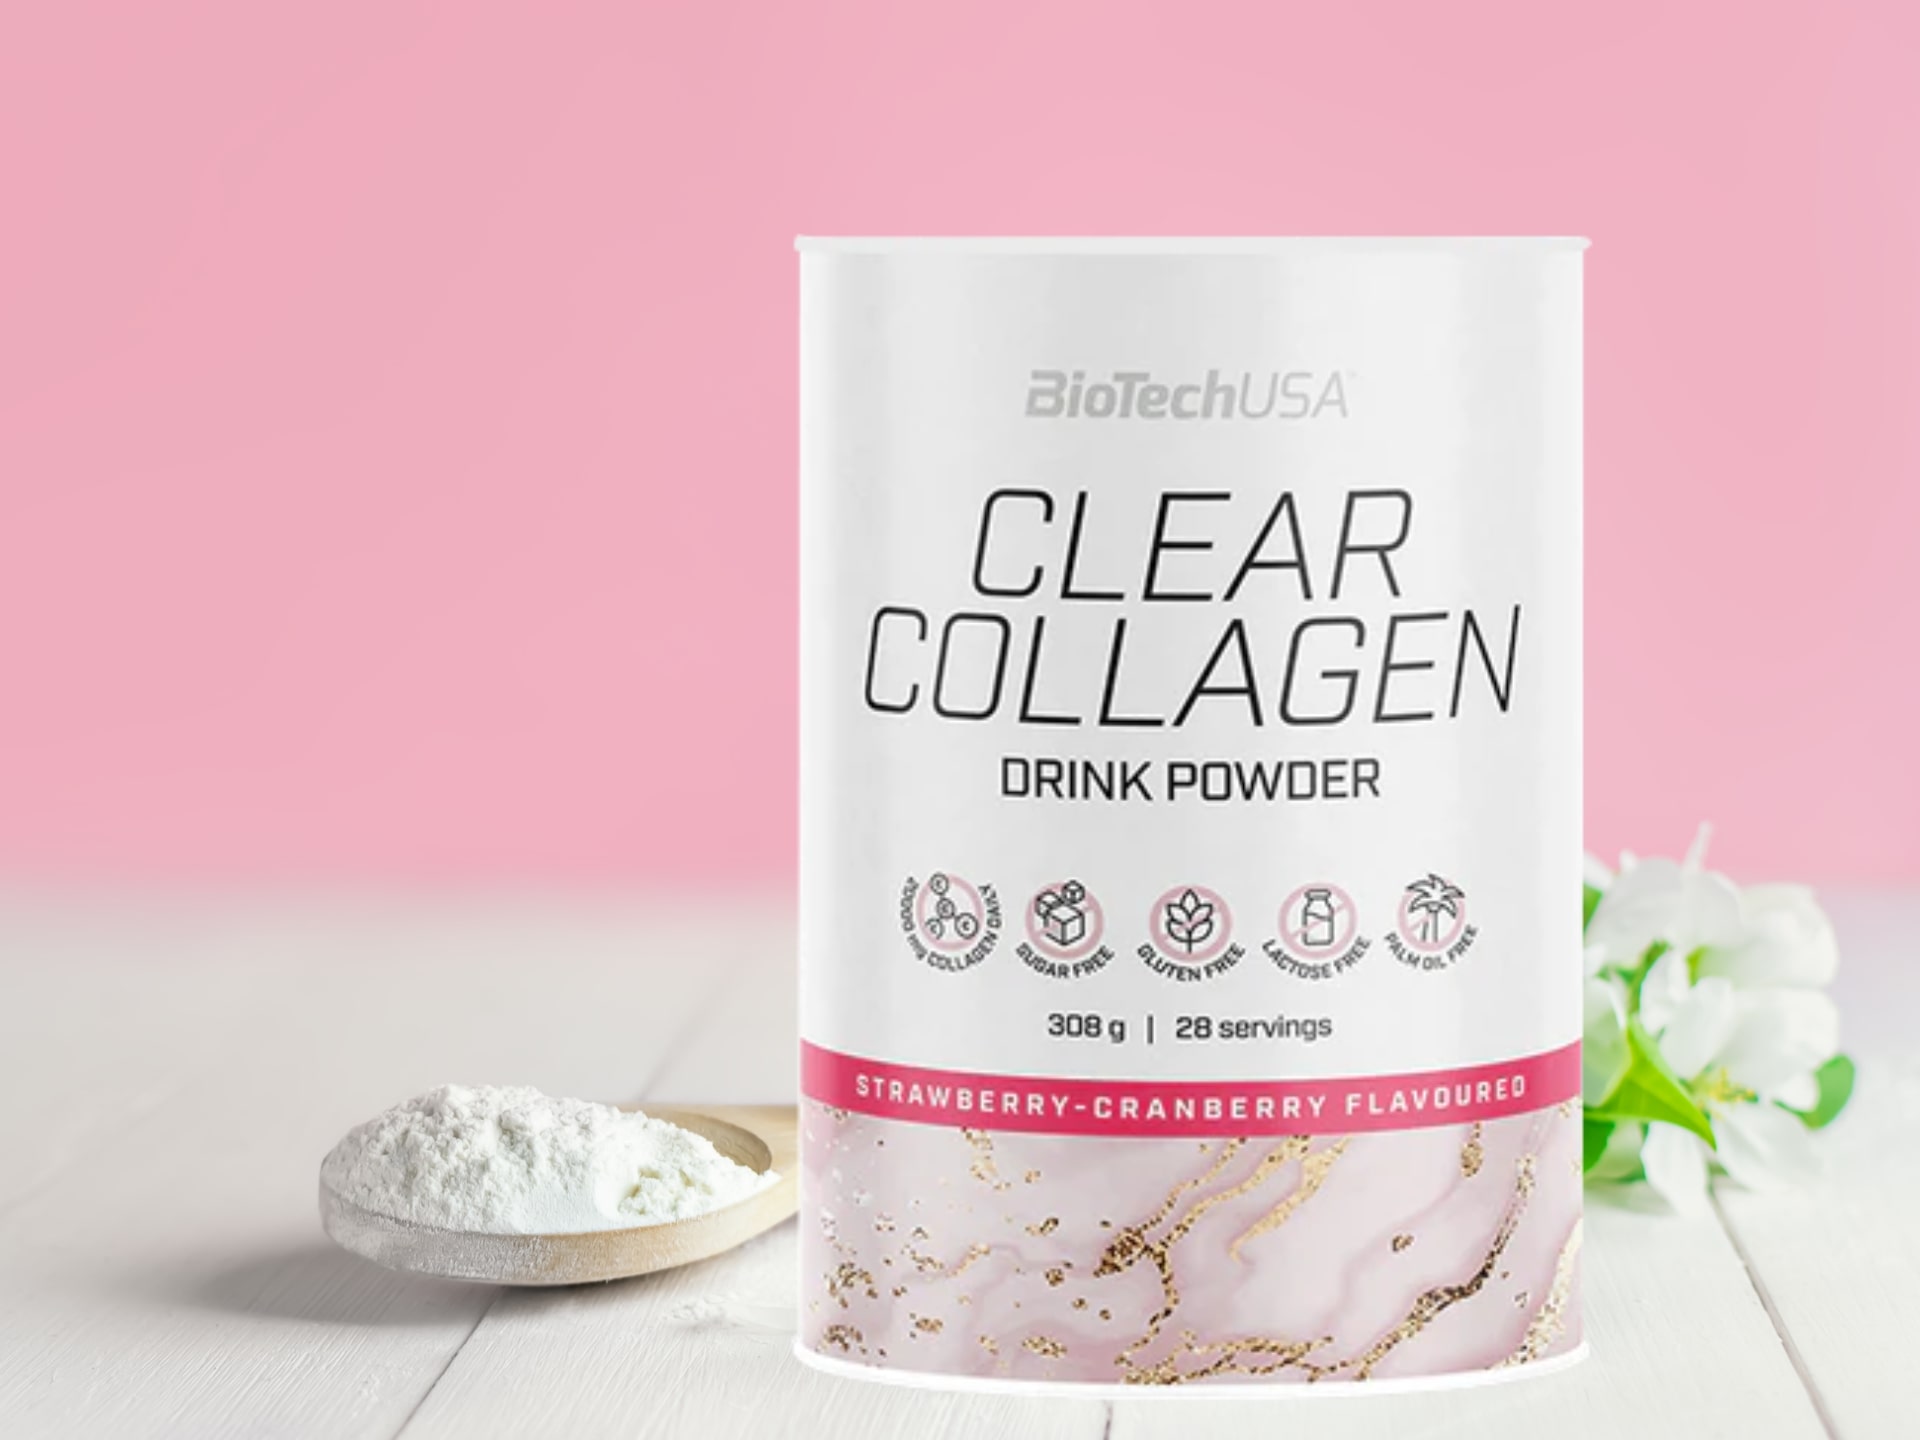 Clear Collagen